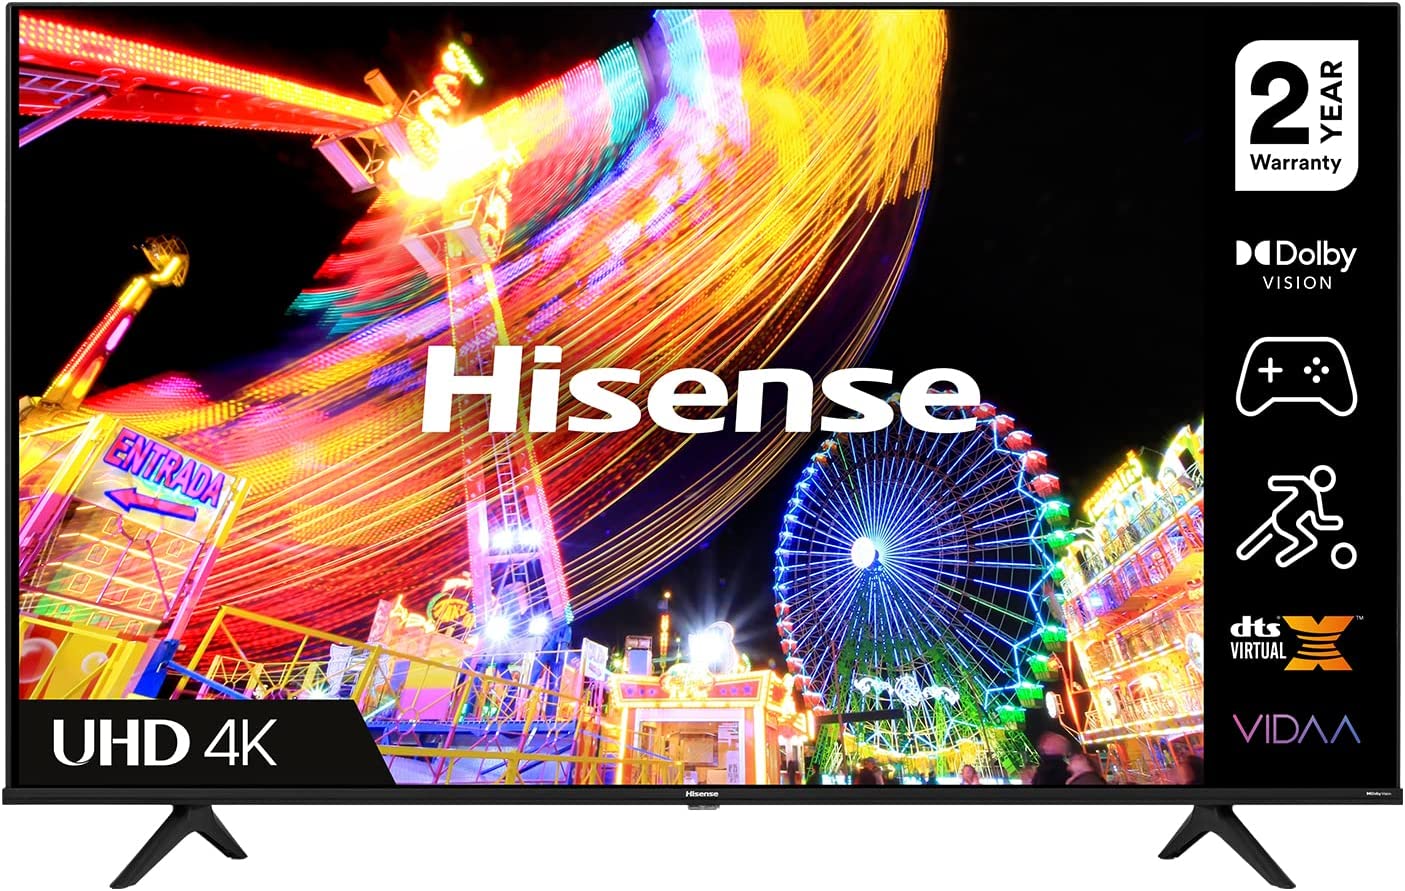 Hisense A6 4K UHD Smart TV